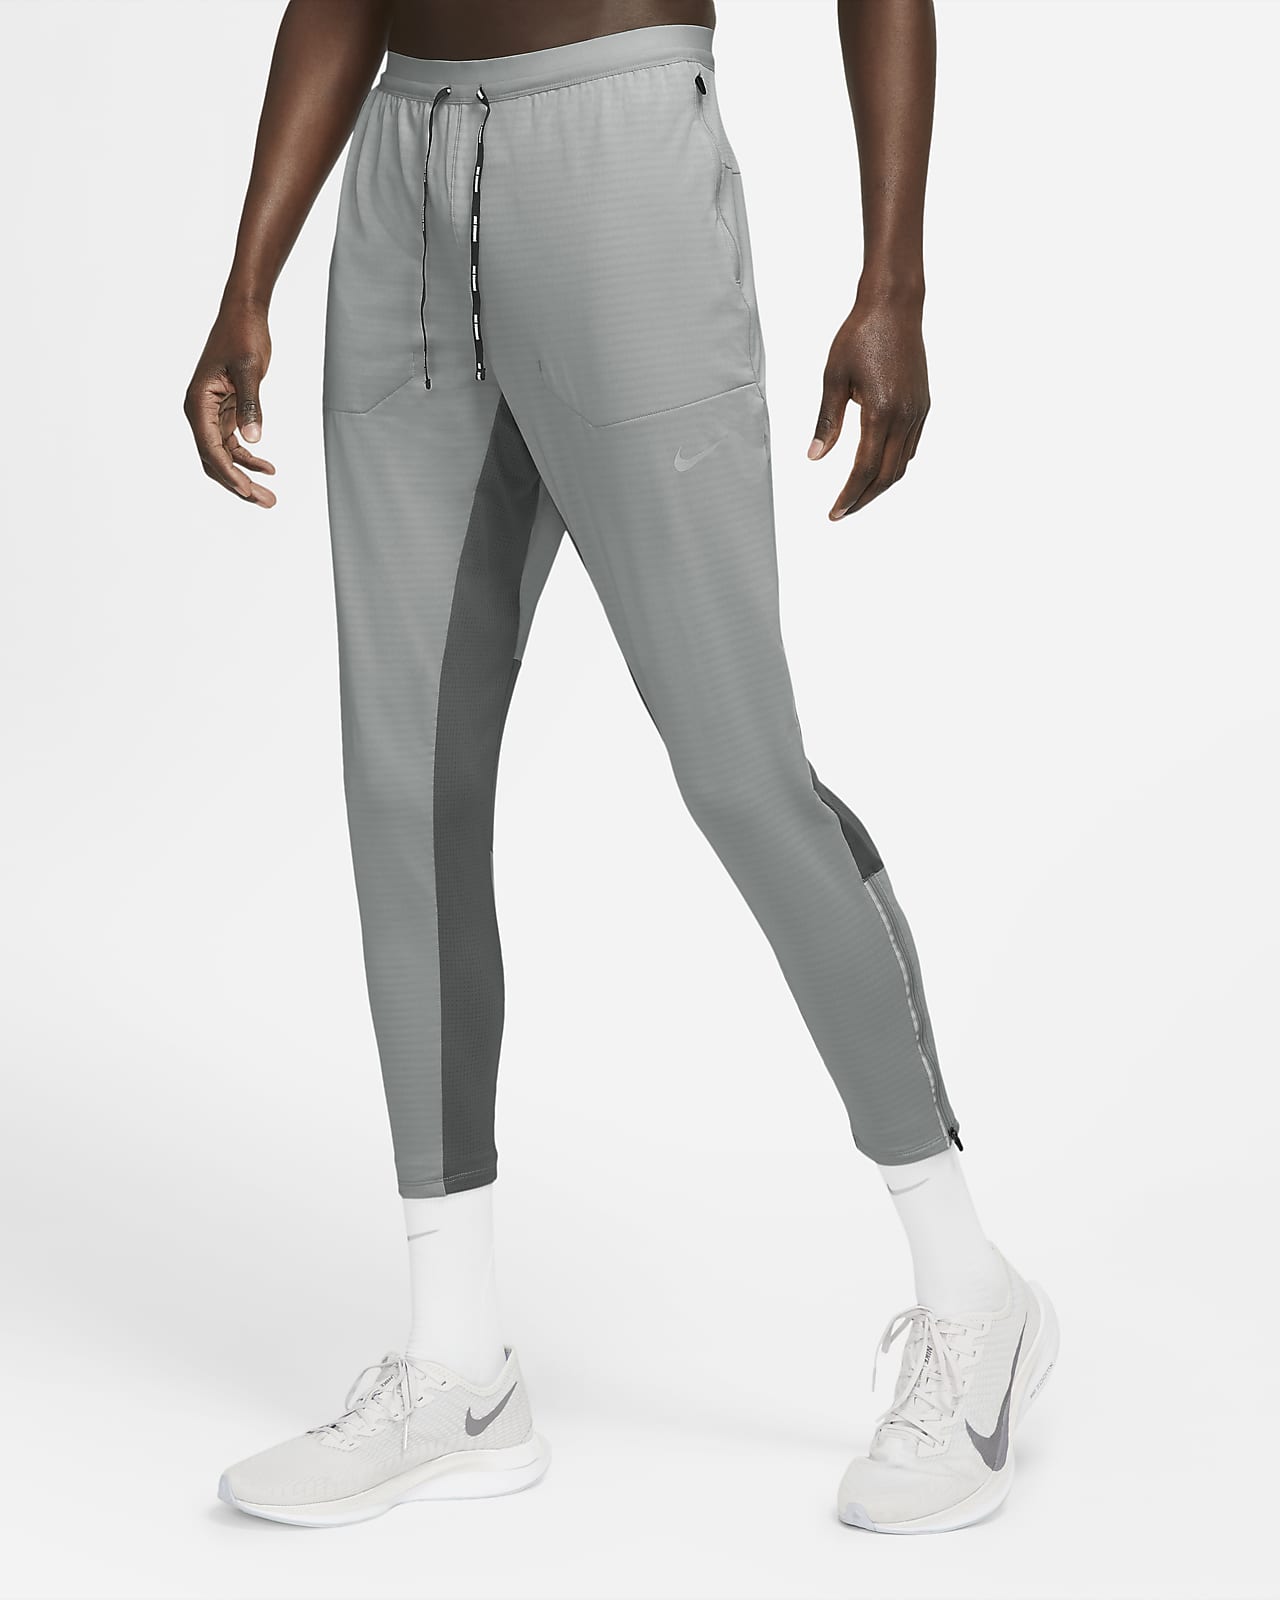 Vil ikke roterende sne Nike Phenom Elite Men's Knit Running Pants. Nike.com